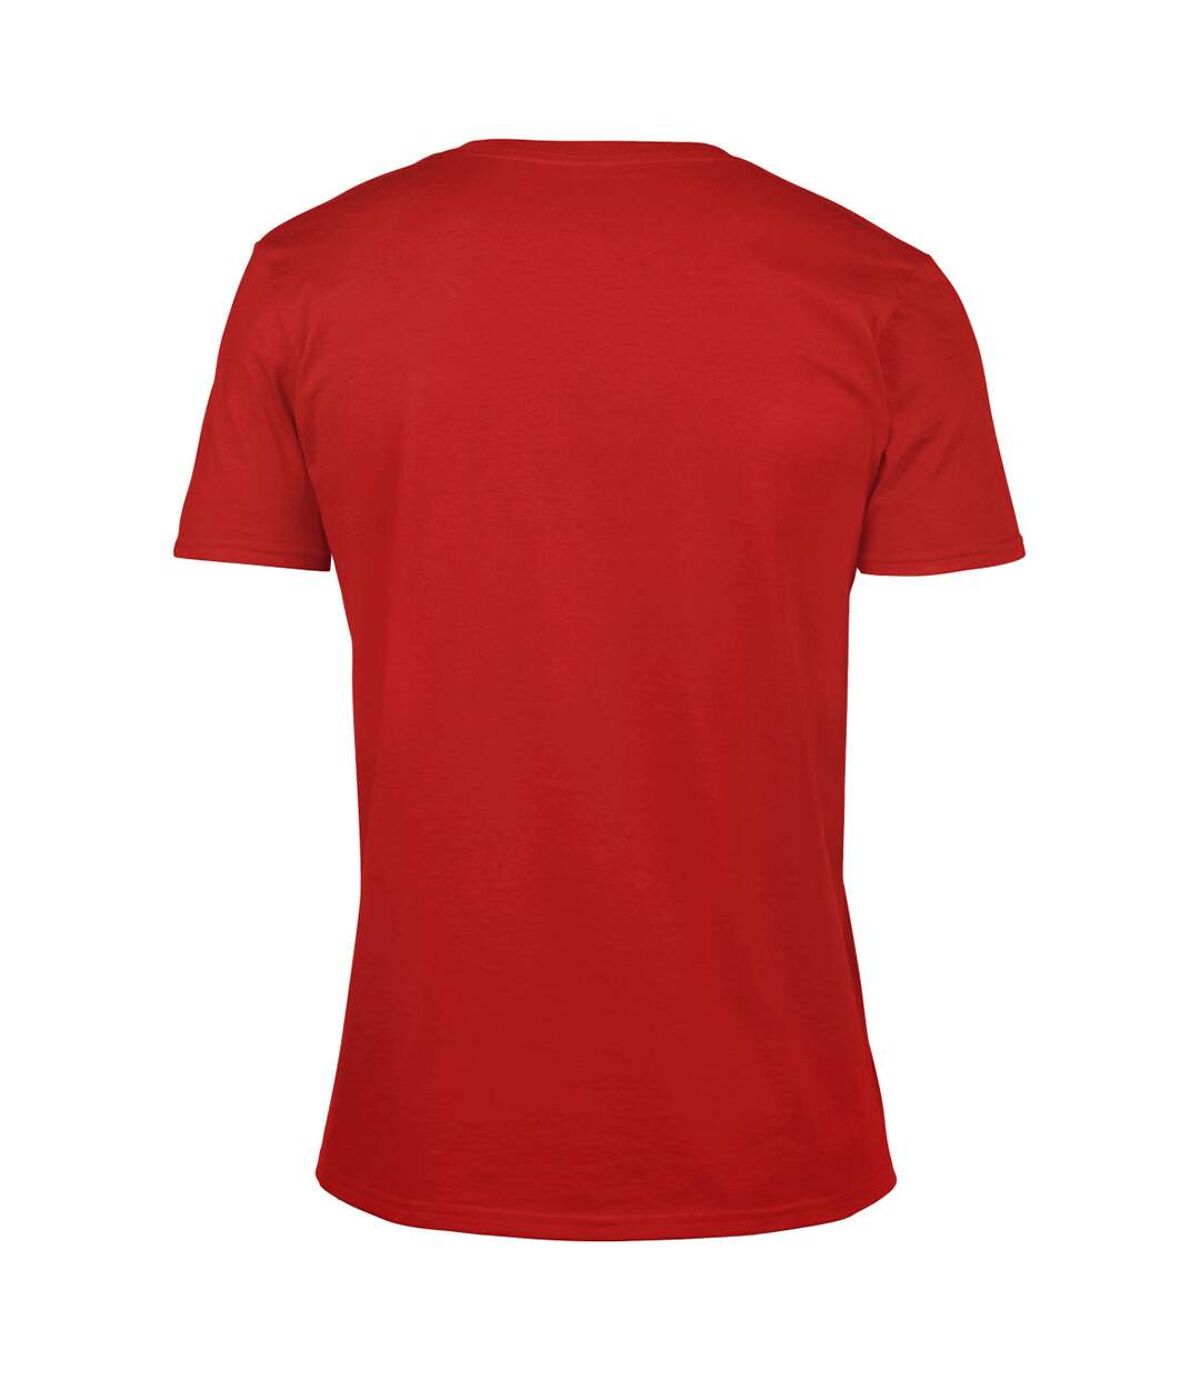 Gildan - T-shirt à manches courtes et col en V - Homme (Rouge) - UTBC490